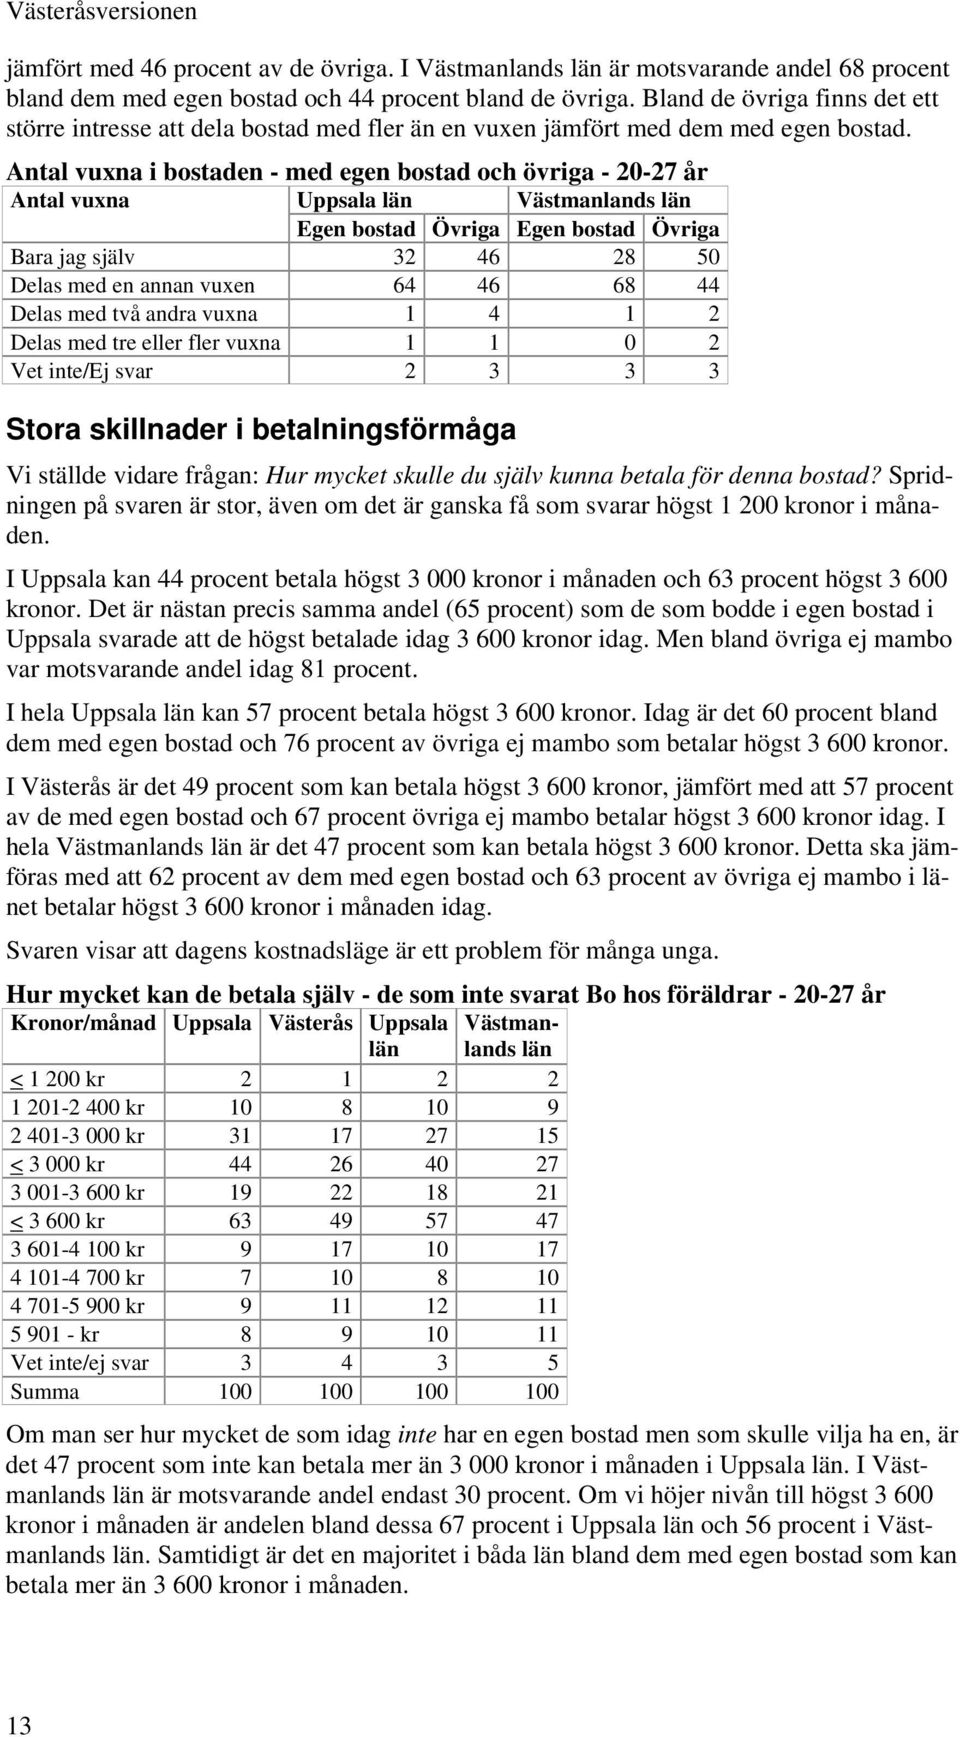 Antal vuxna i bostaden - med egen bostad och övriga - 20-27 år Antal vuxna Uppsala Västmanlands Egen bostad Övriga Egen bostad Övriga Bara jag själv 32 46 28 50 Delas med en annan vuxen 64 46 68 44